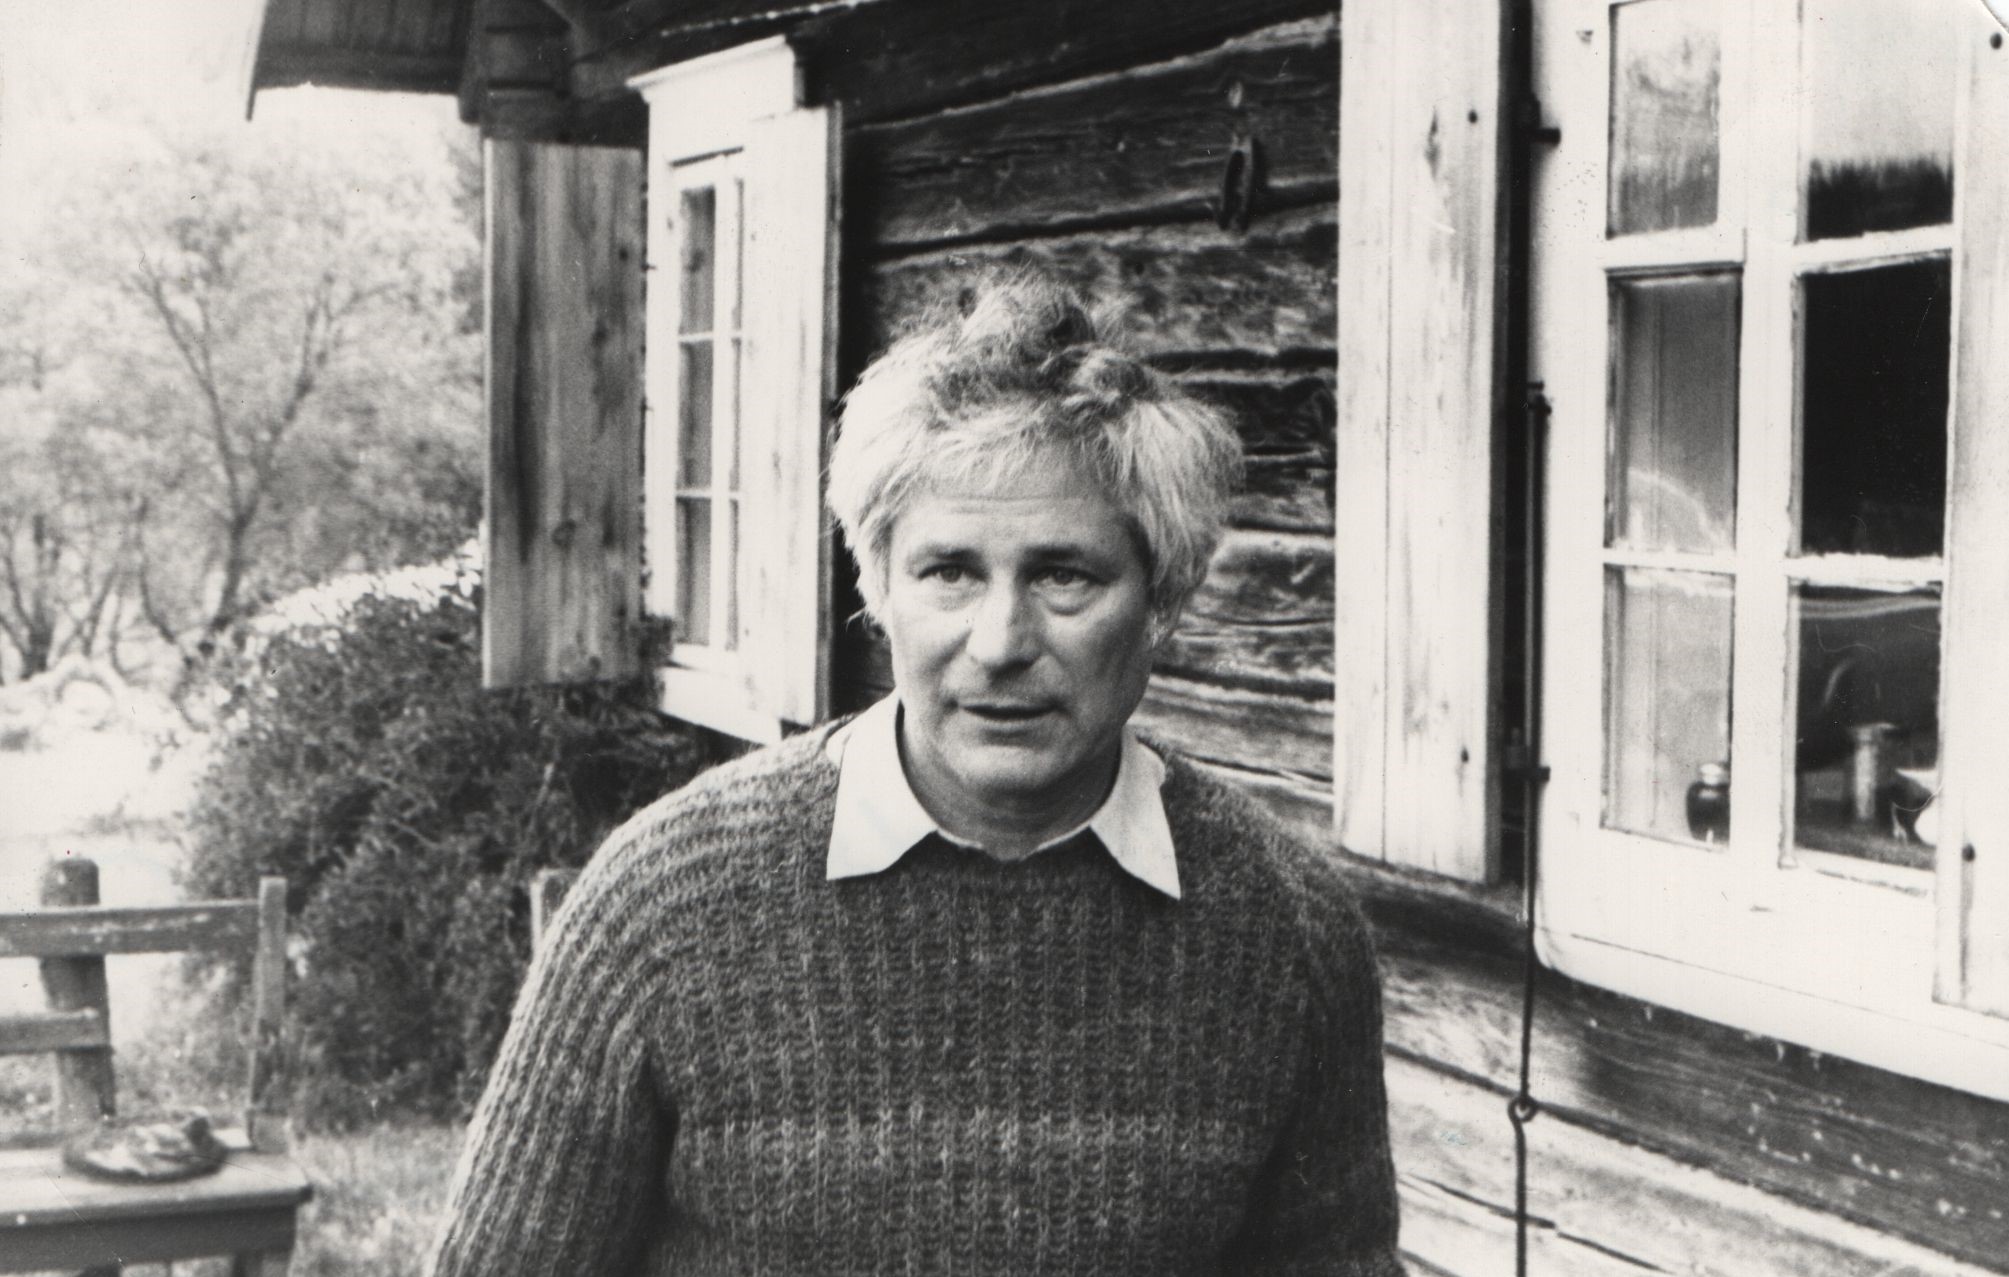 Rašytojas Jonas Avyžius. Prūdiškės (Švenčionių r.), 1975 m. MLLM 20163